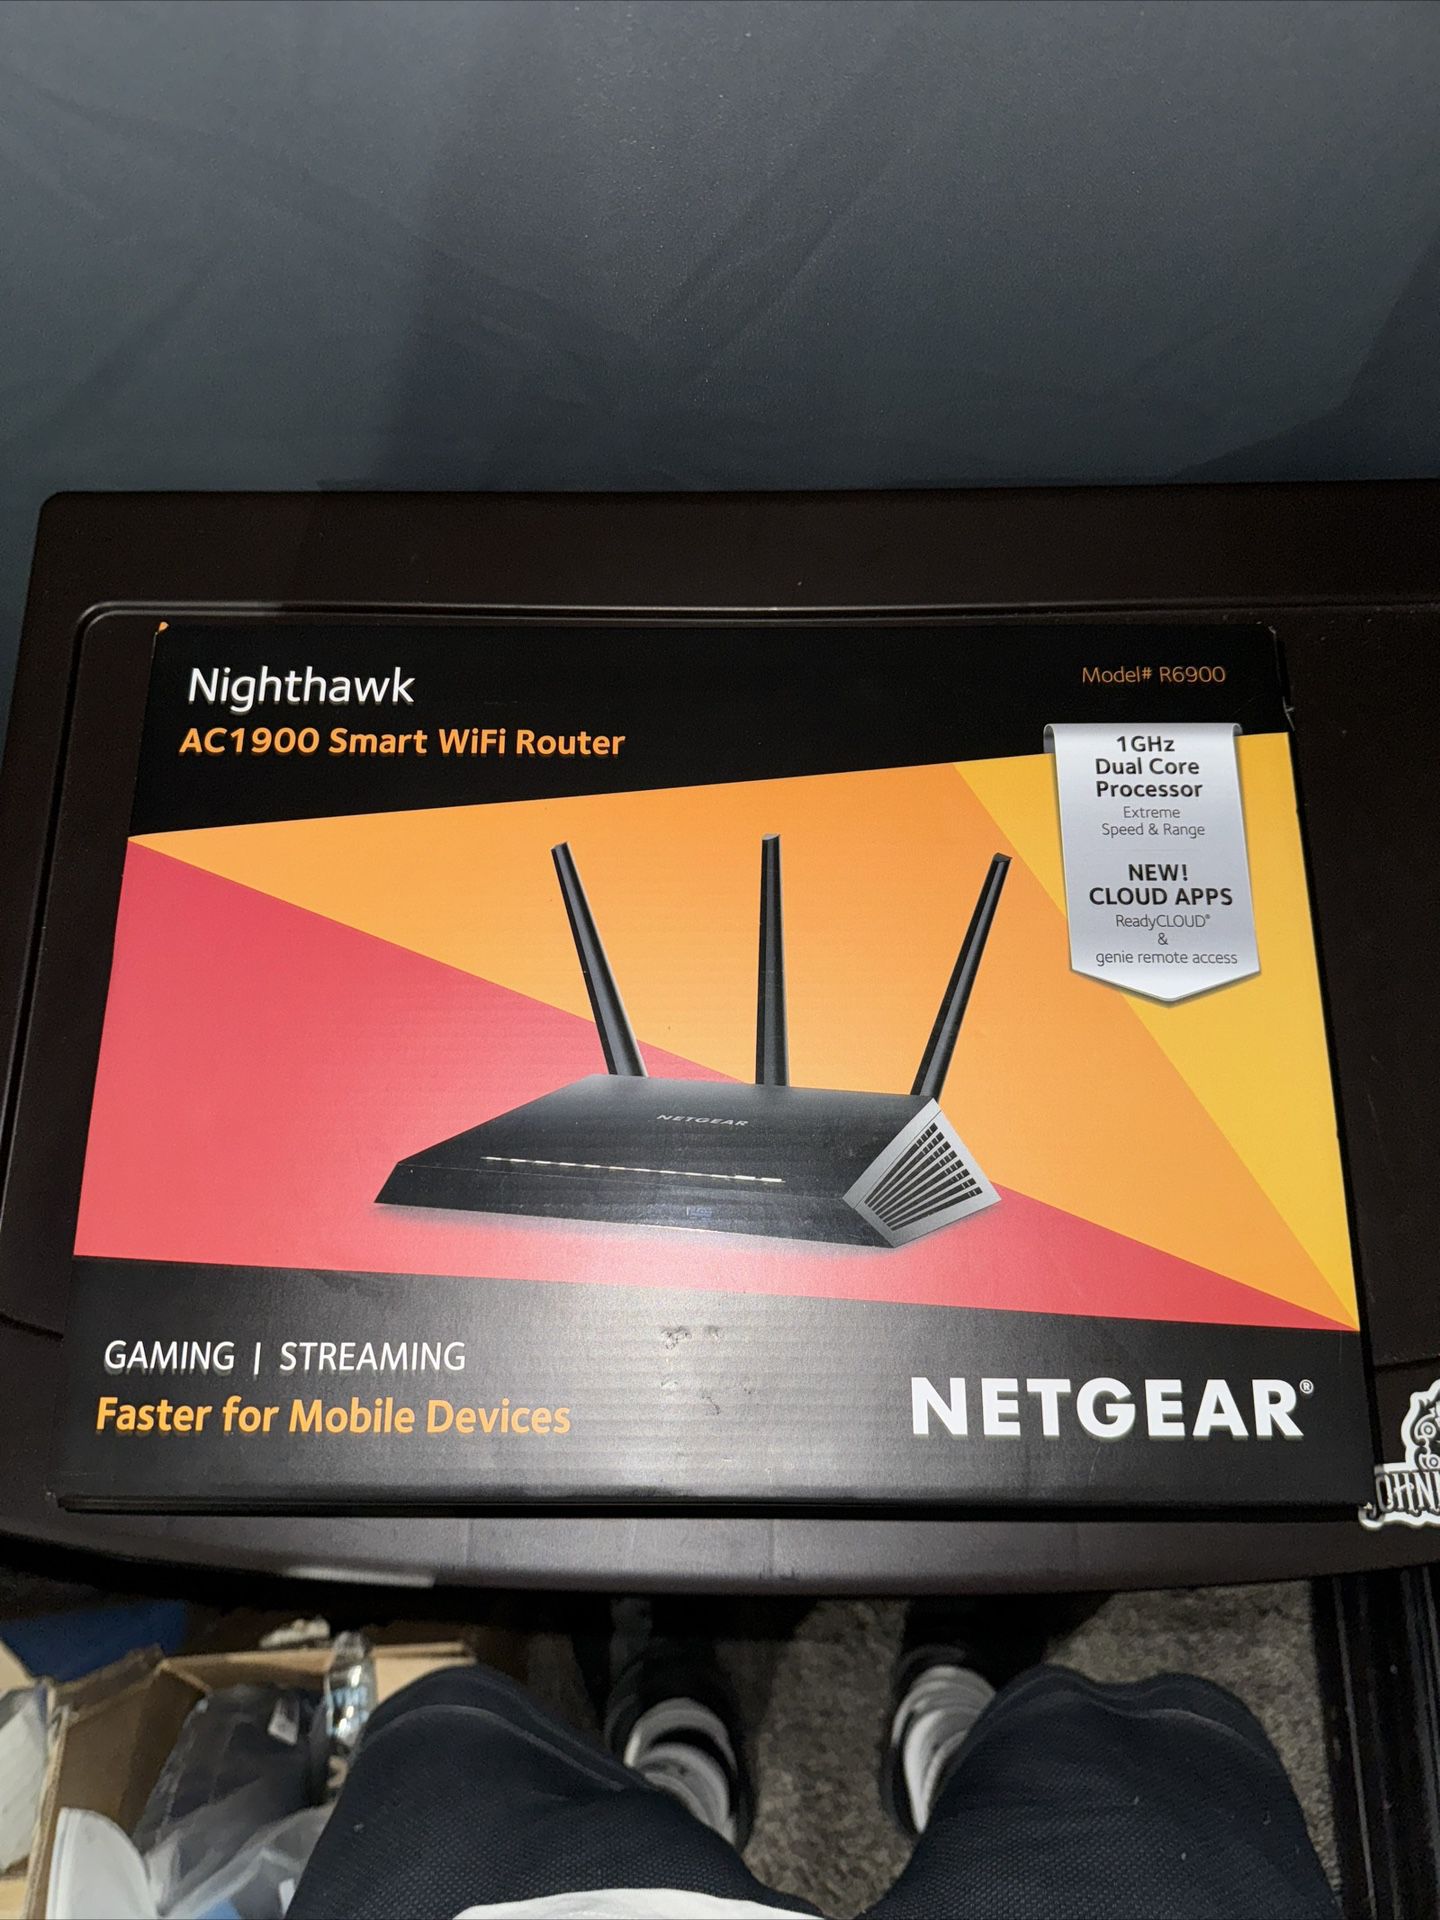 Netgear Nighthawk Gigabit AC1900 Smart Wifi Router 1900 Mbps 5GHz + 2.4GHz bands